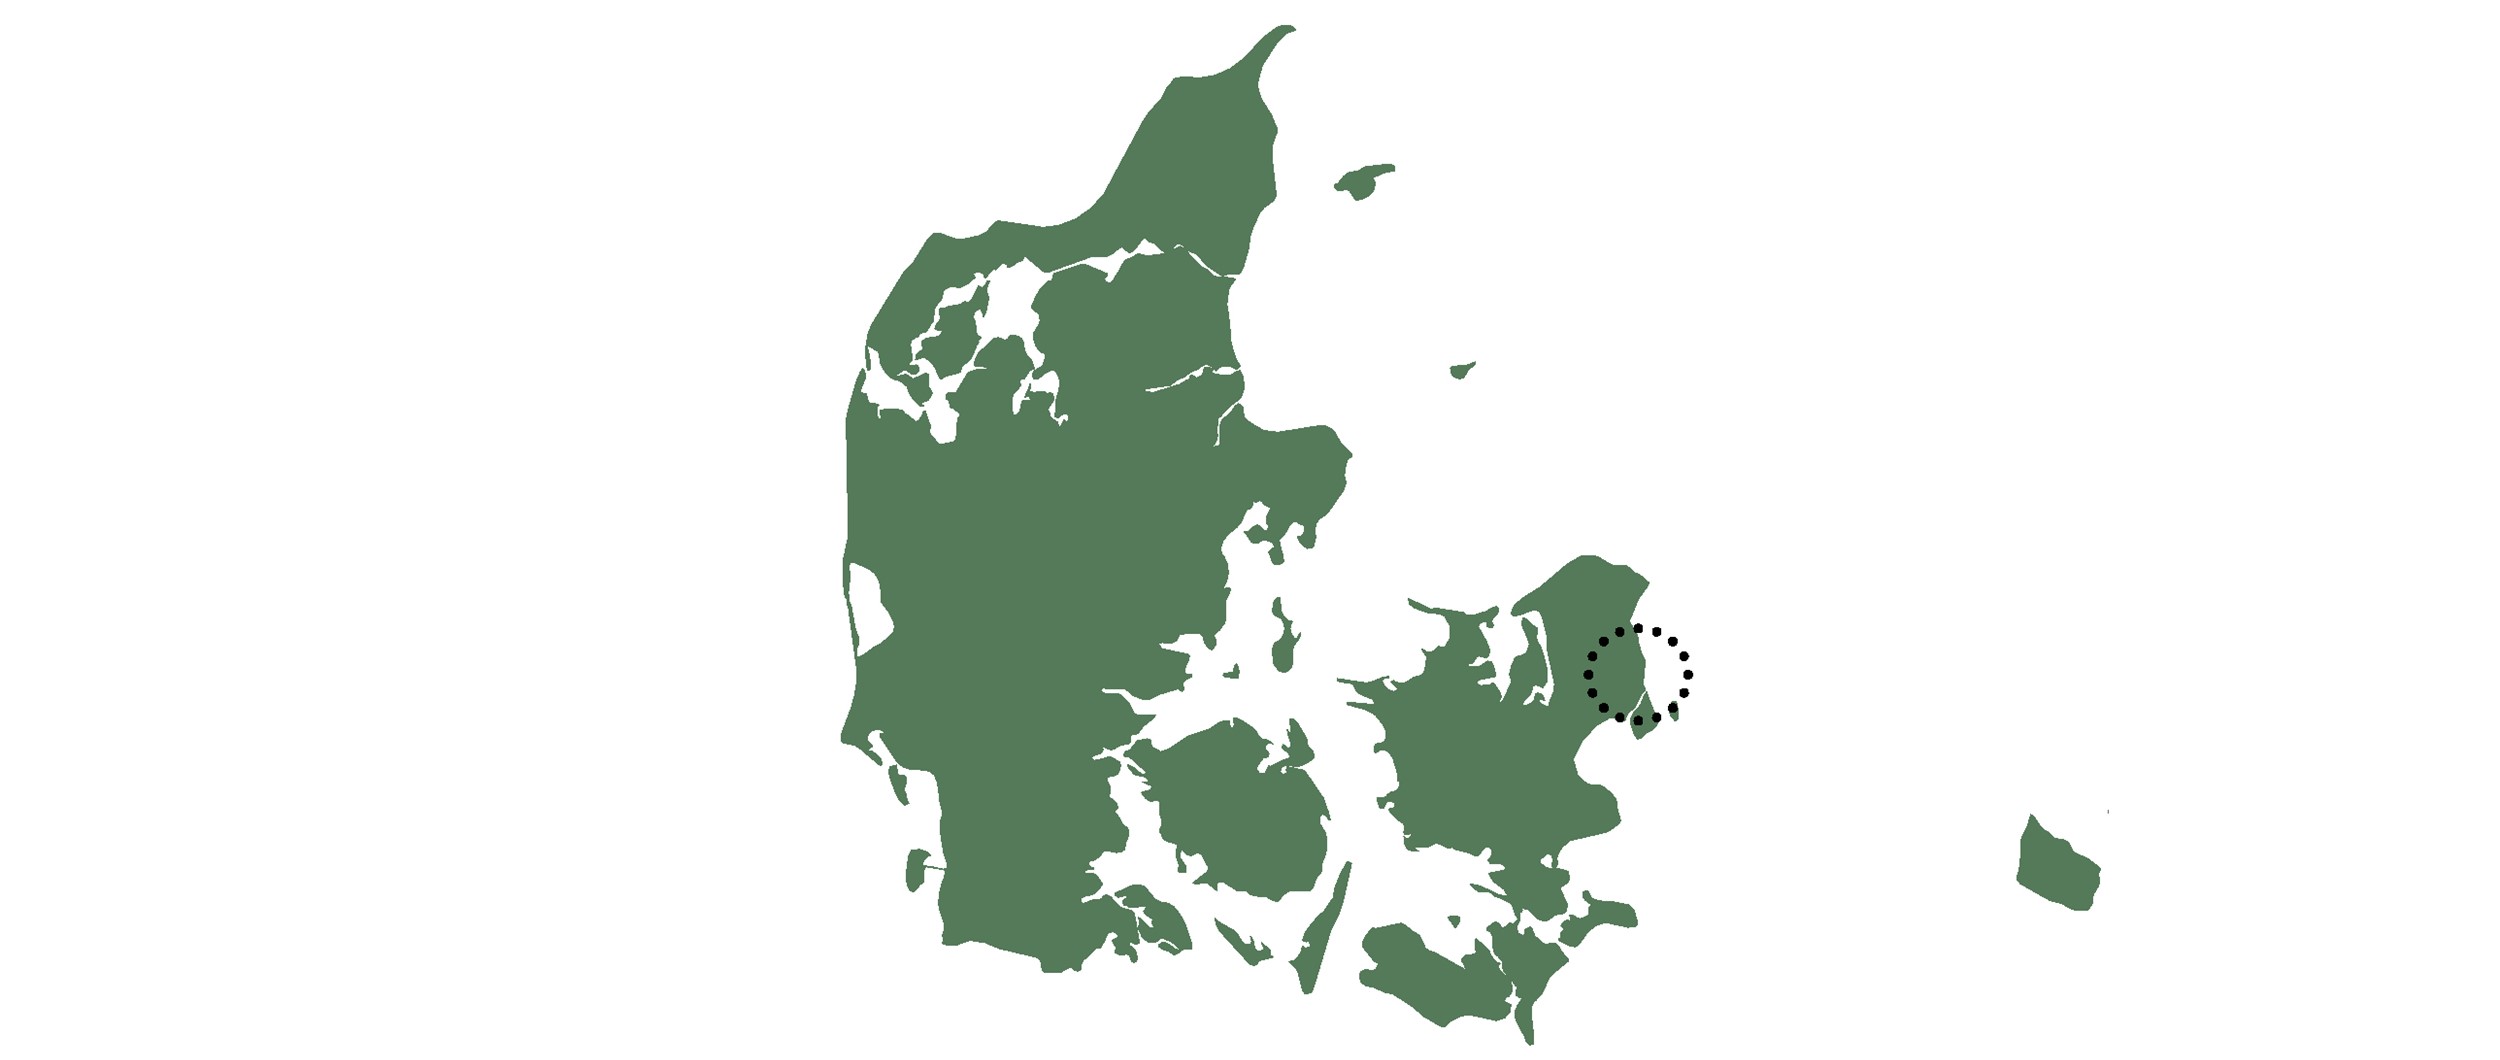 Vedbæk ligger 20 kilometer nord for København.